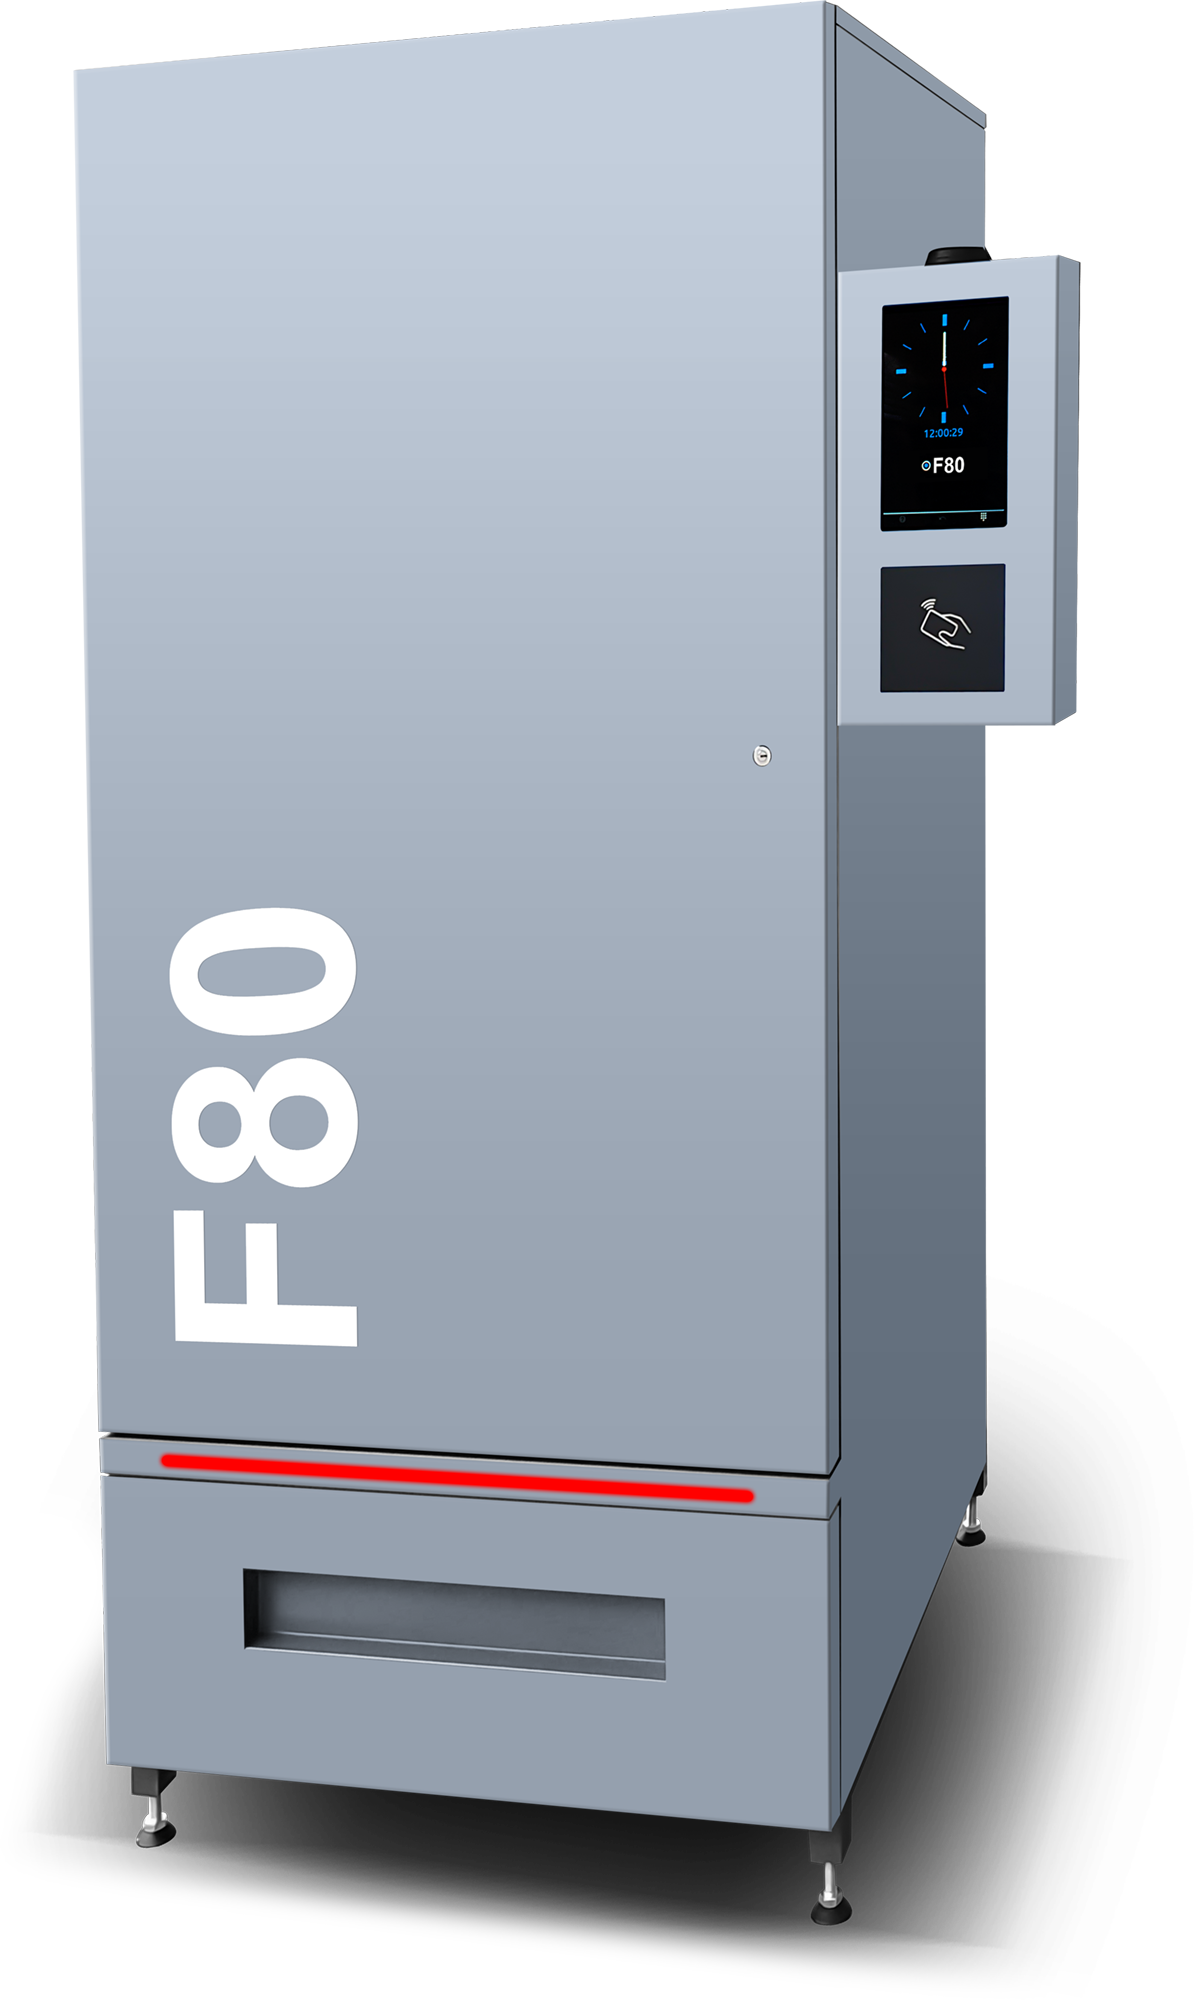 Automat BHP F80